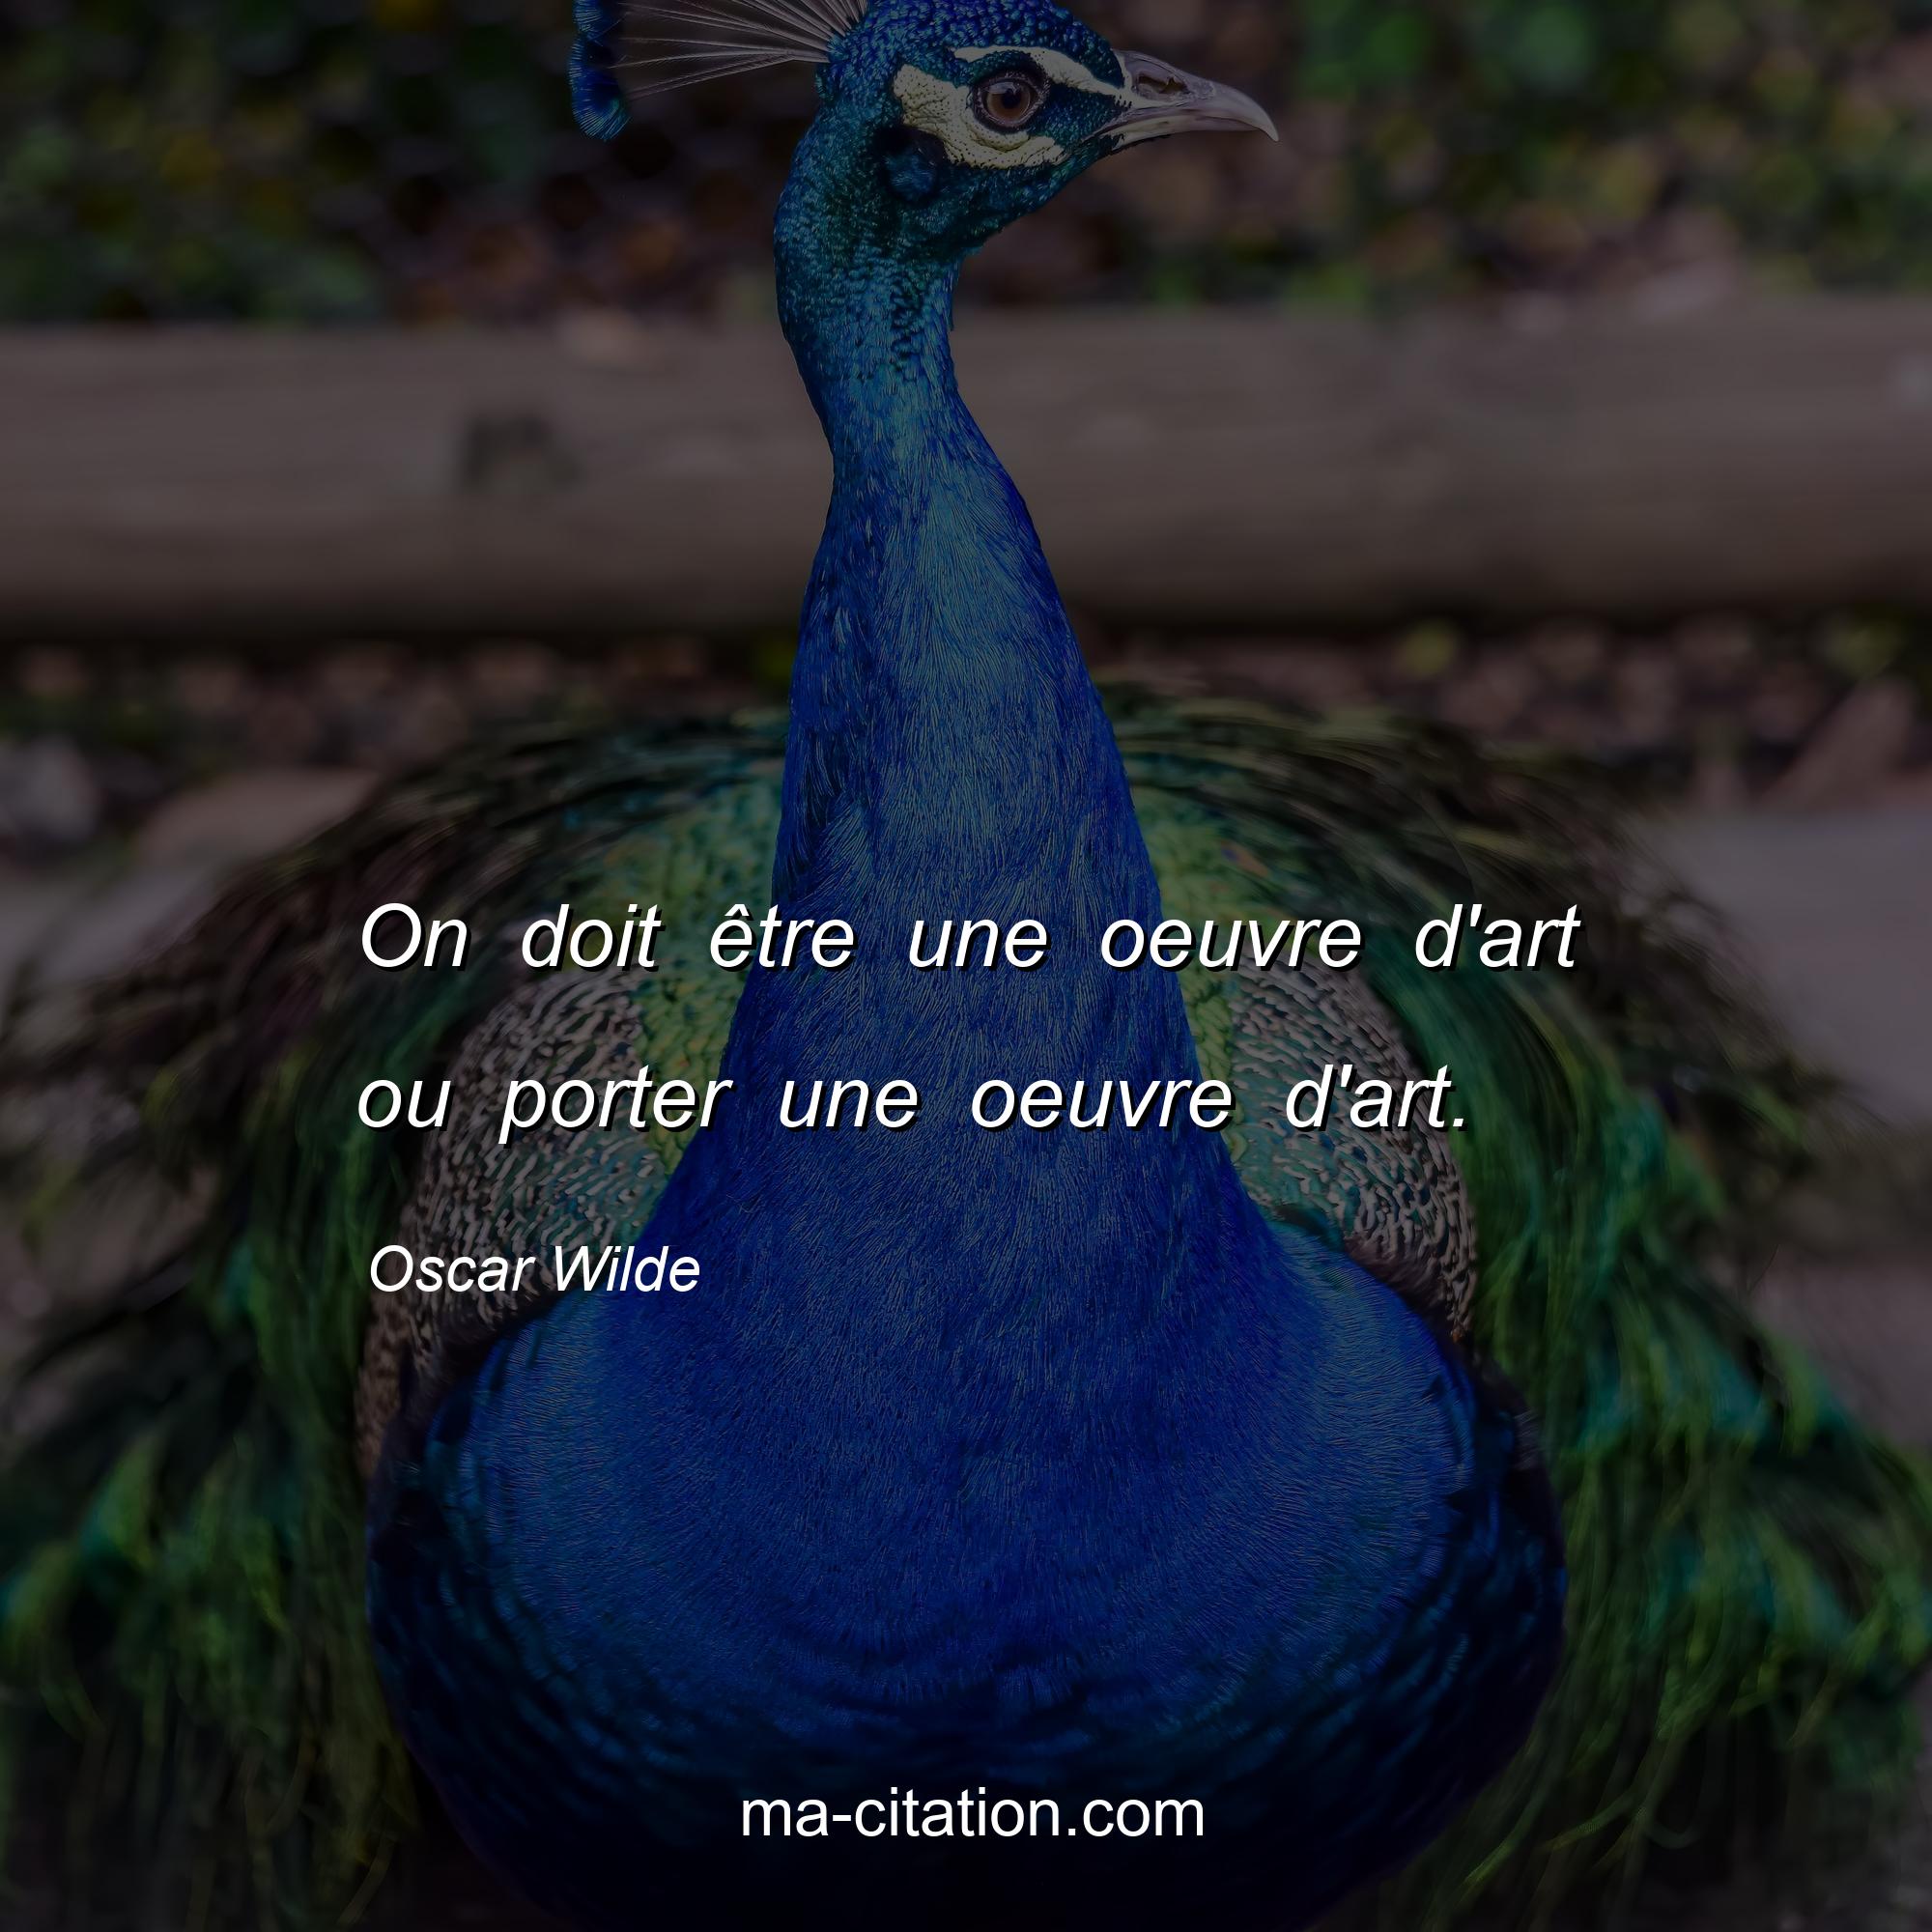 Oscar Wilde : On doit être une oeuvre d'art ou porter une oeuvre d'art.